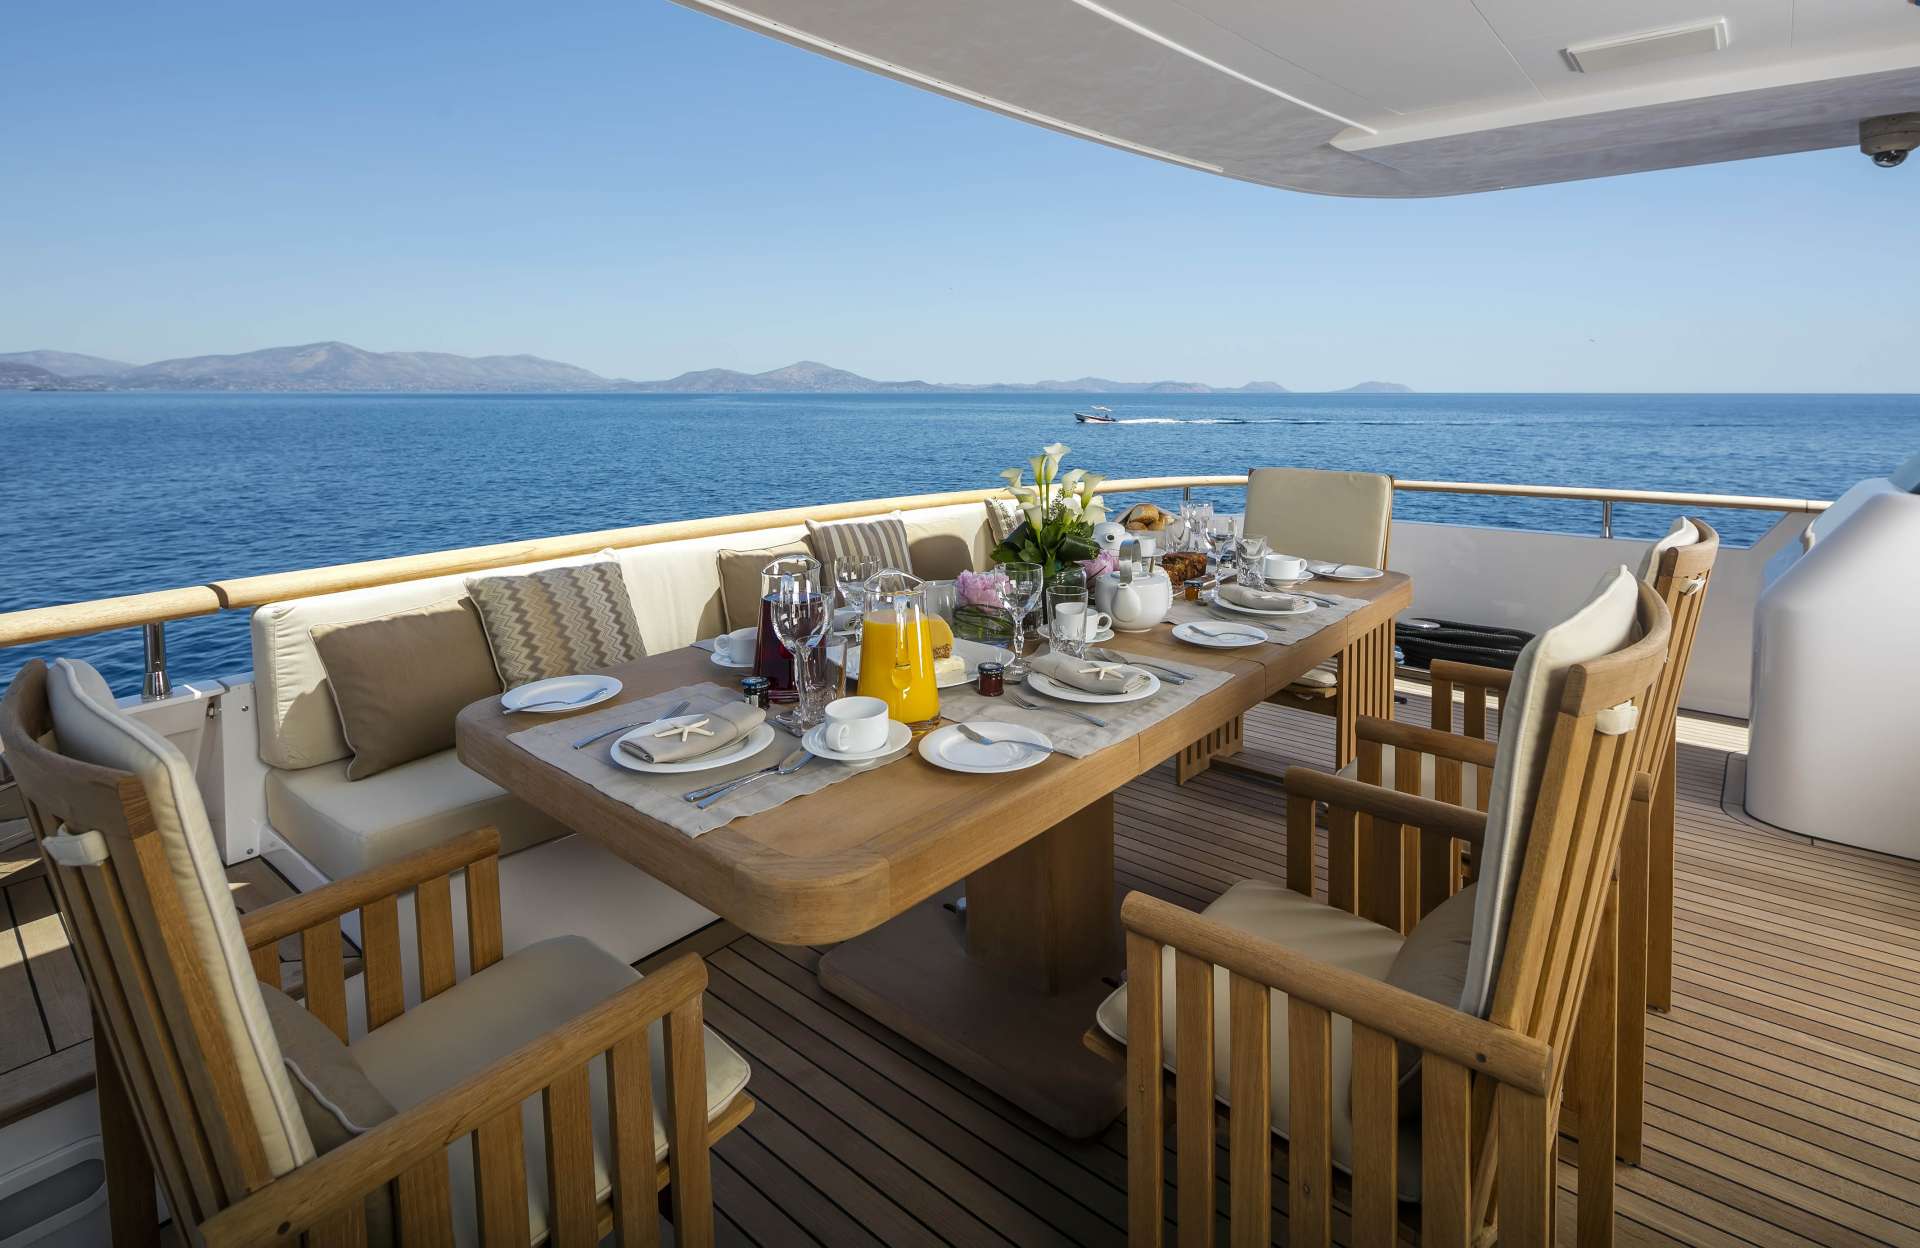 ALEXIA AV Yacht Charter - Dining table